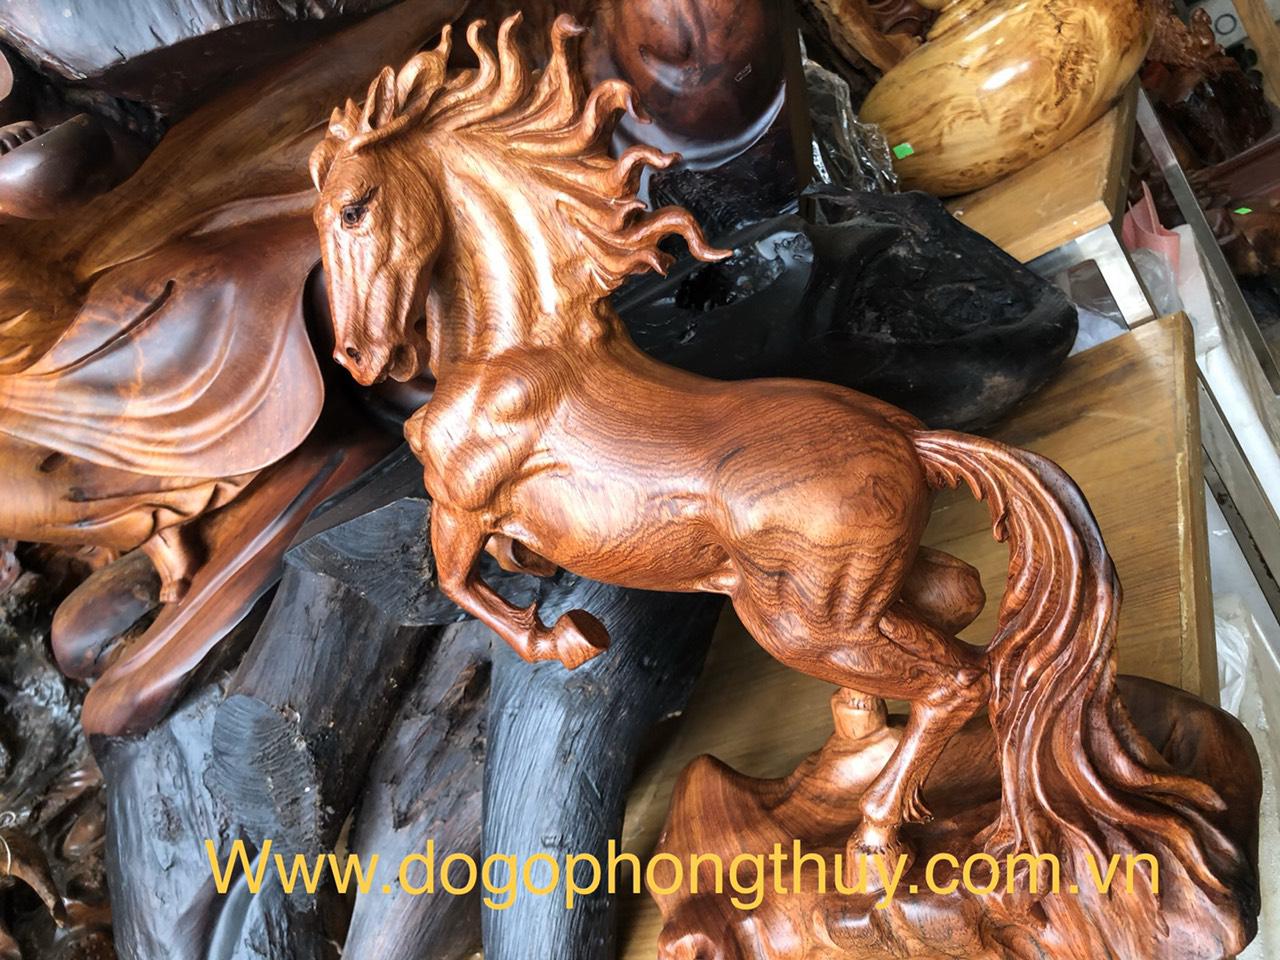 Tượng ngựa gỗ và những kỳ bí về phong thủy